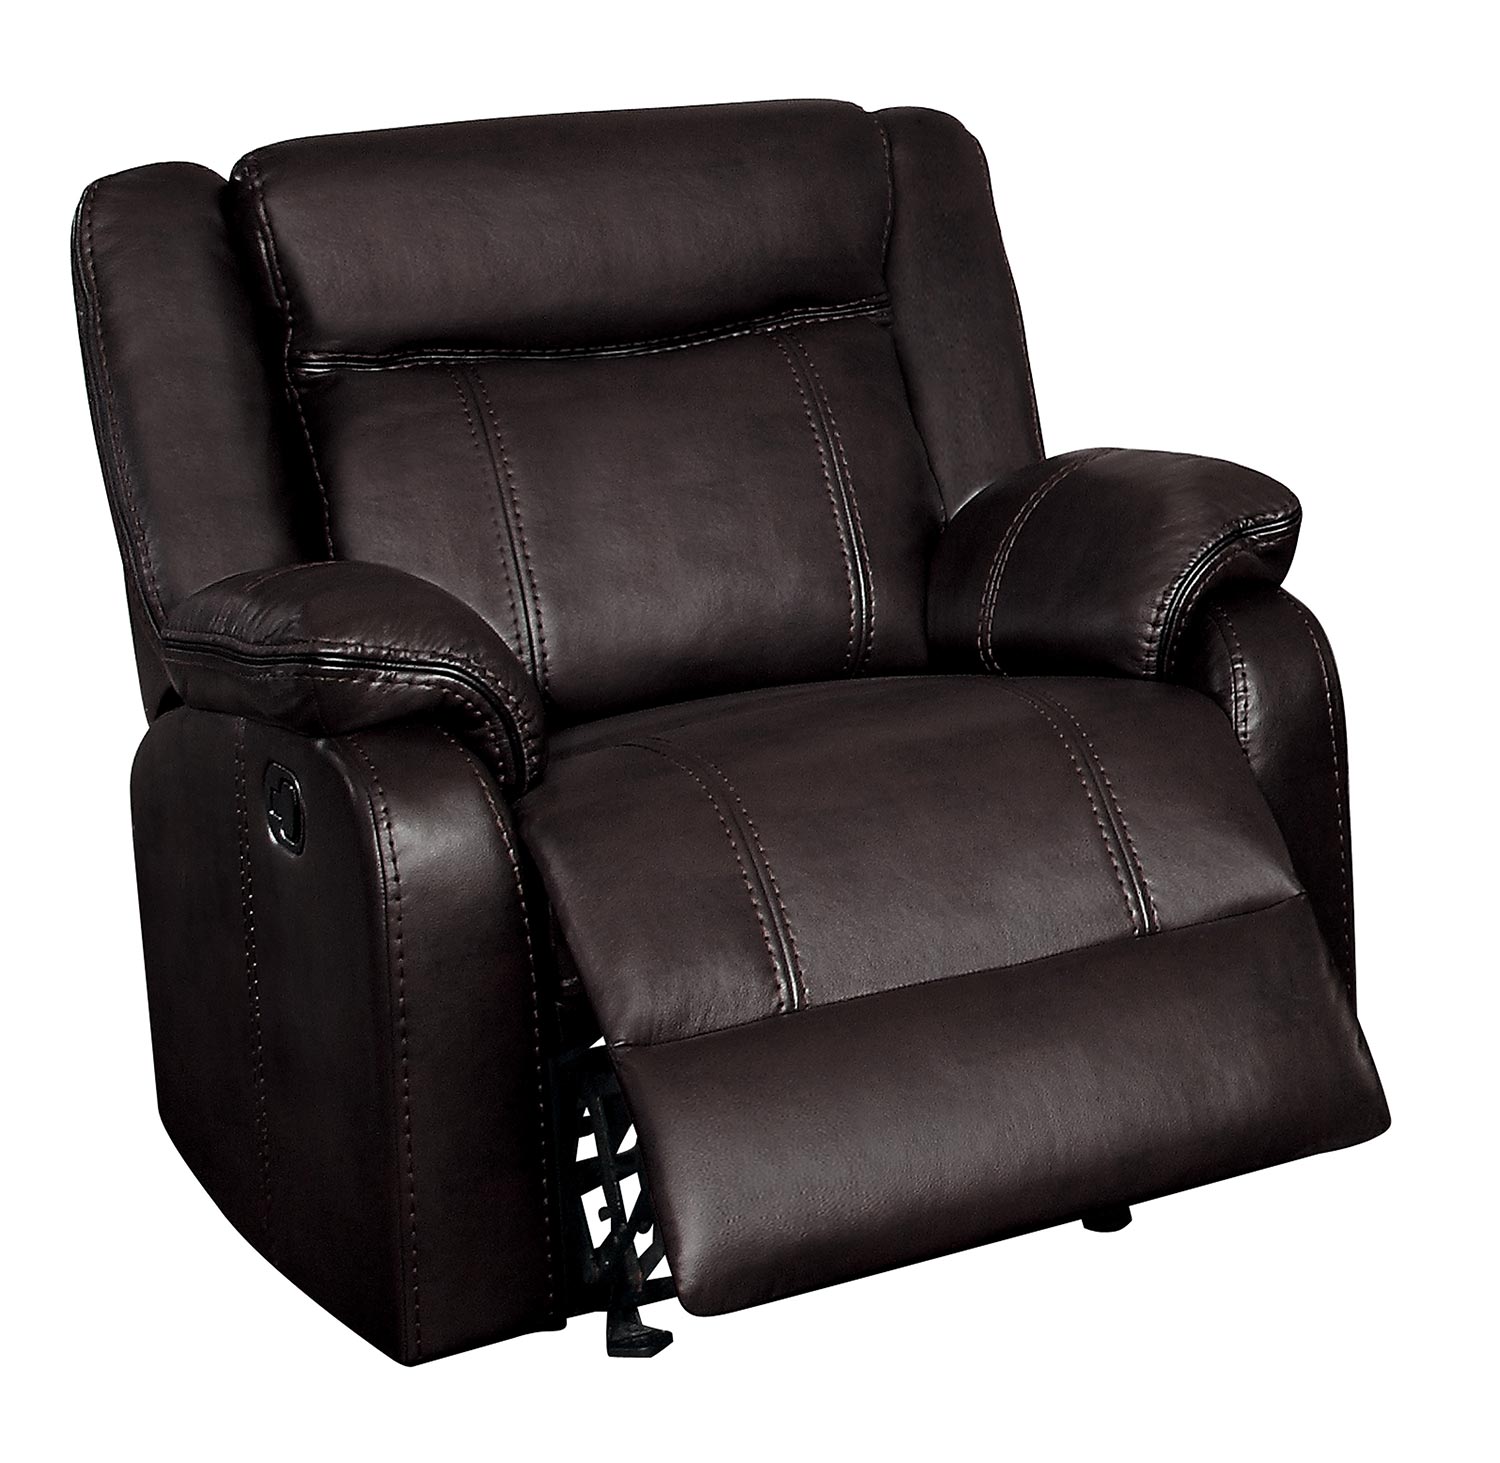 Homelegance Jude Glider Reclining Chair - Dark Brown Leather Gel Match